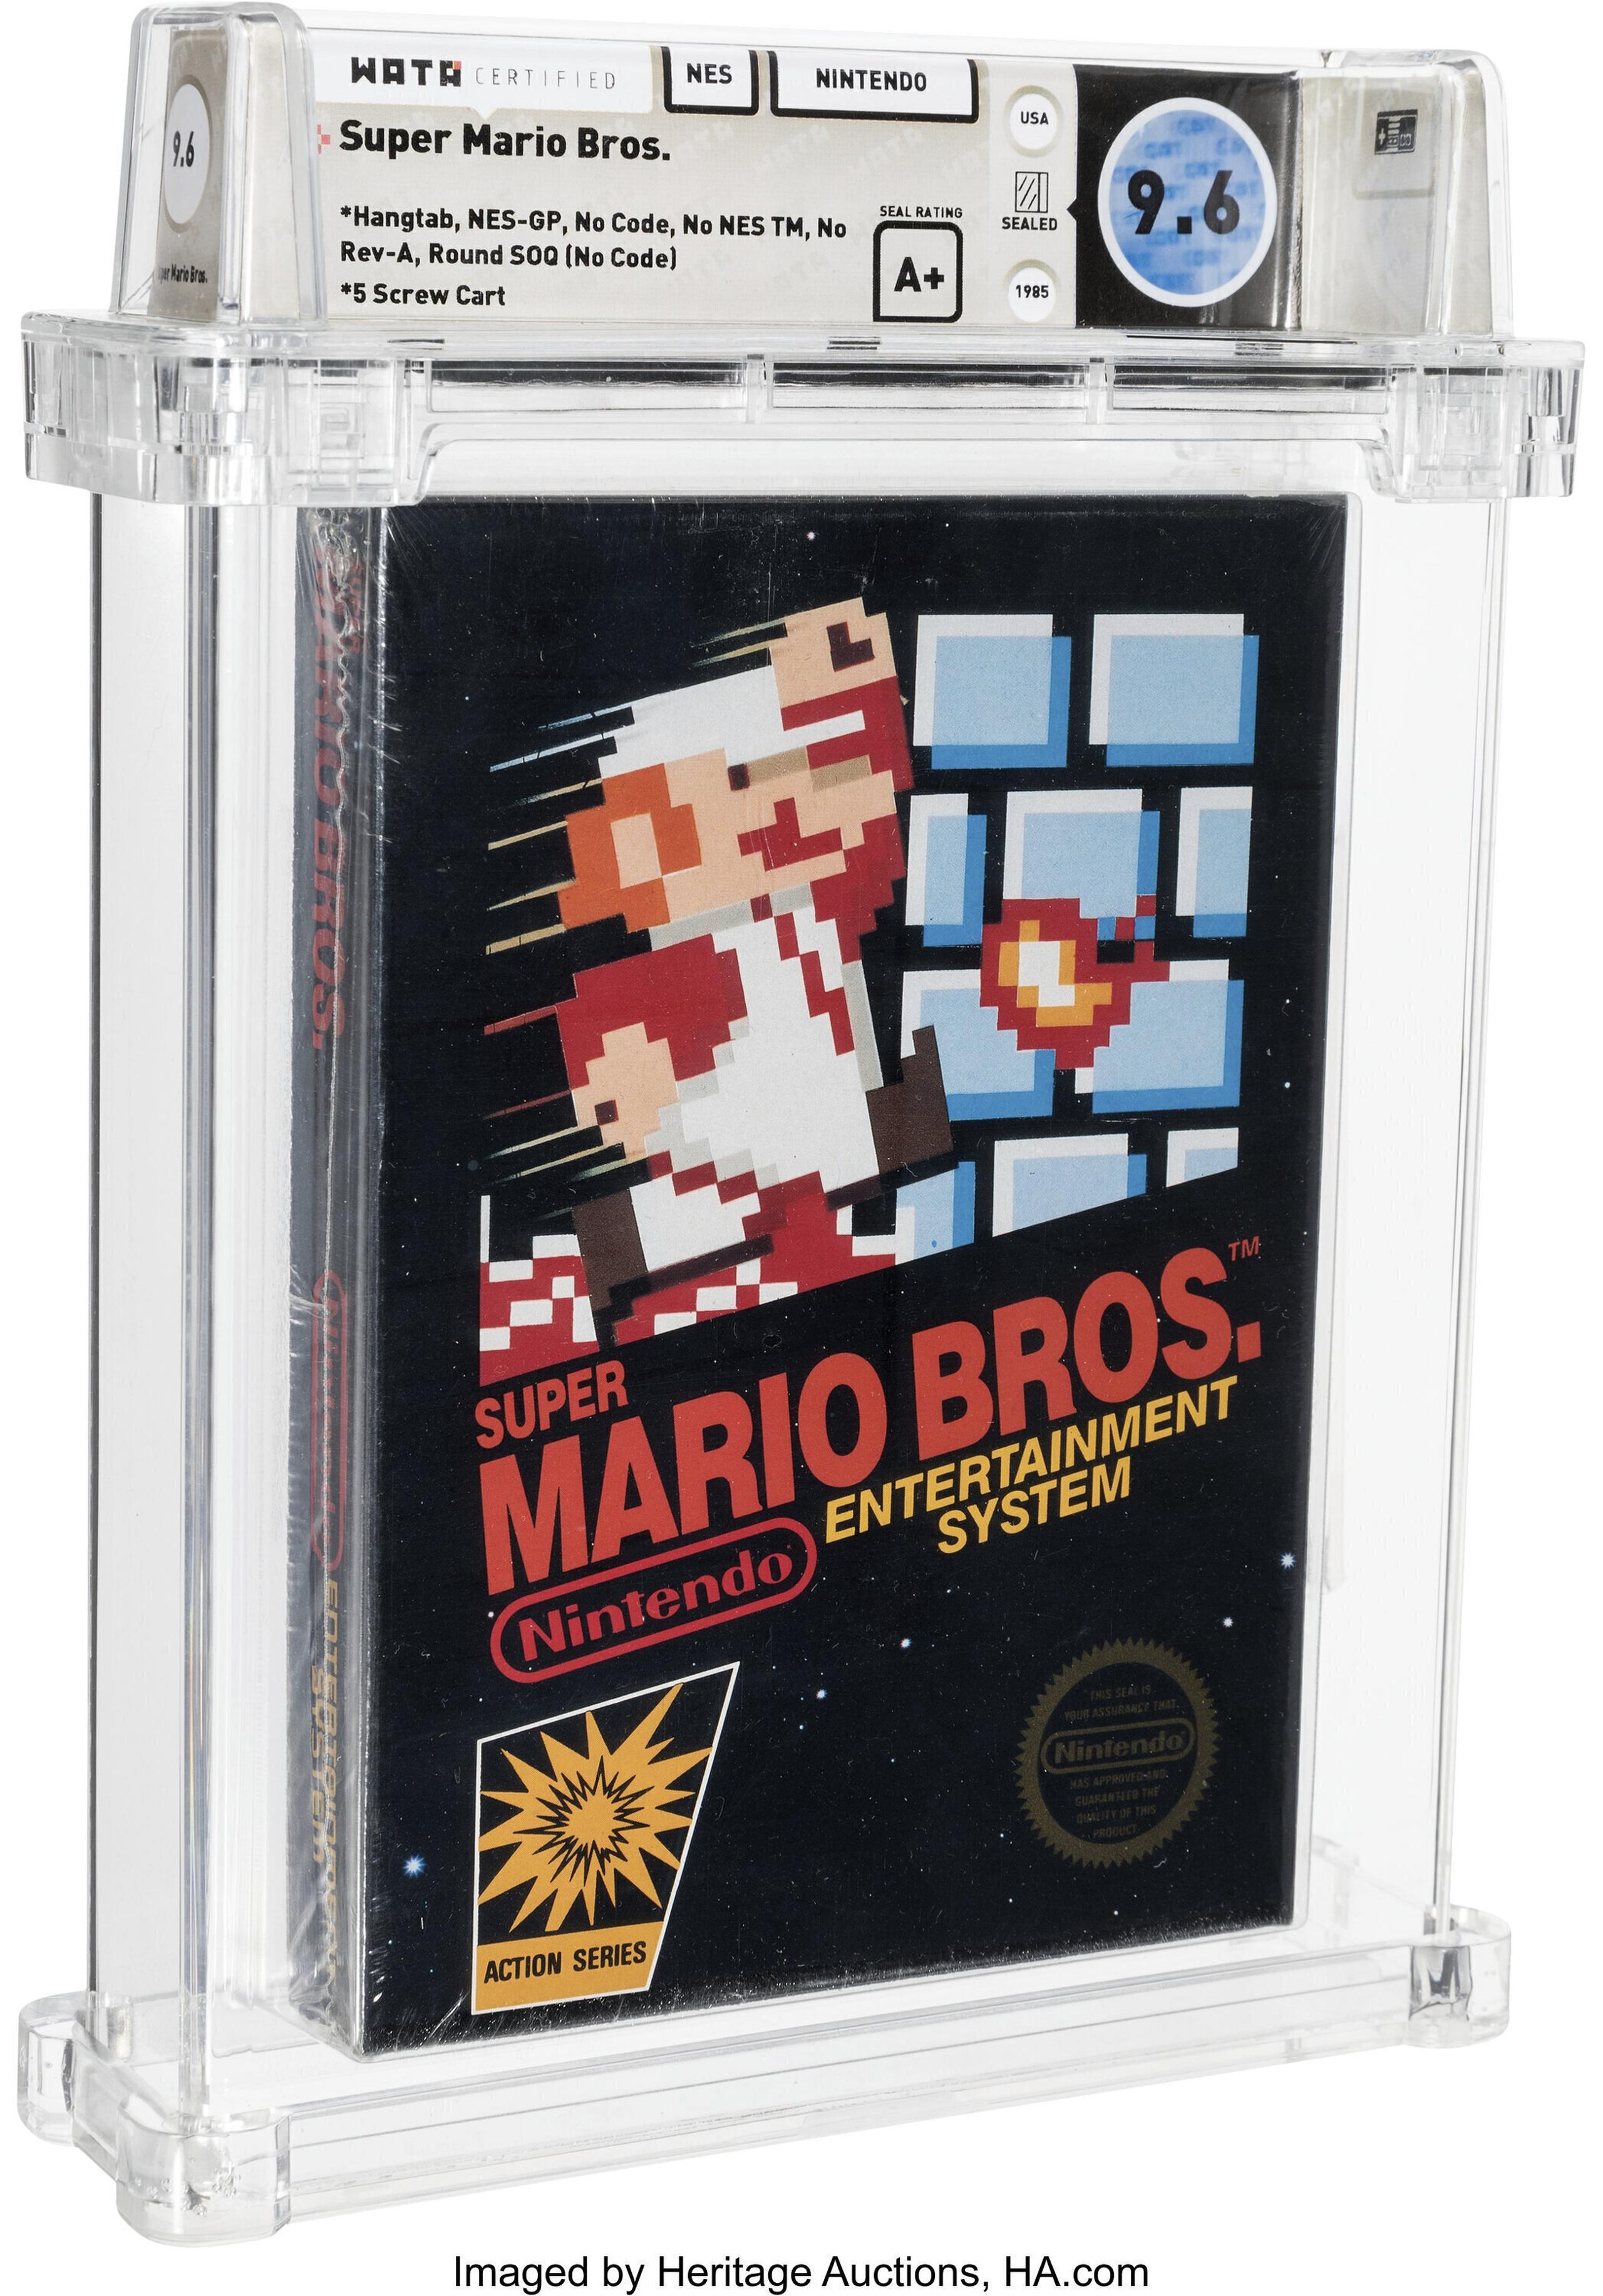 Cartucho sin abrir del juego Super Mario Bros., de Nintento, adquirido en 1986.